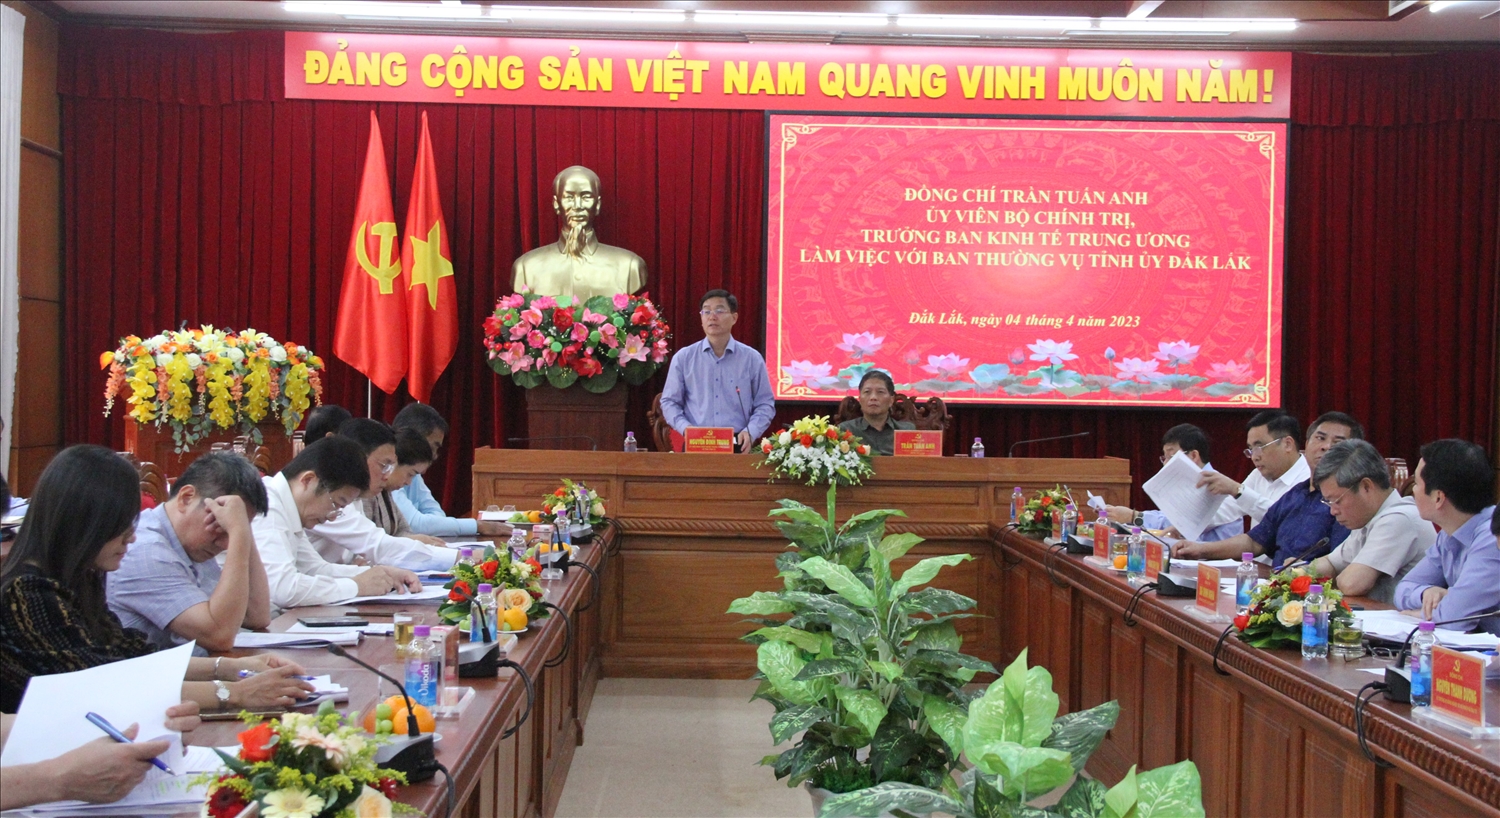 Ủy viên Trung ương Đảng, Bí thư Tỉnh ủy Đắk Lắk Nguyễn Đình Trung kiến nghị đoàn công tác